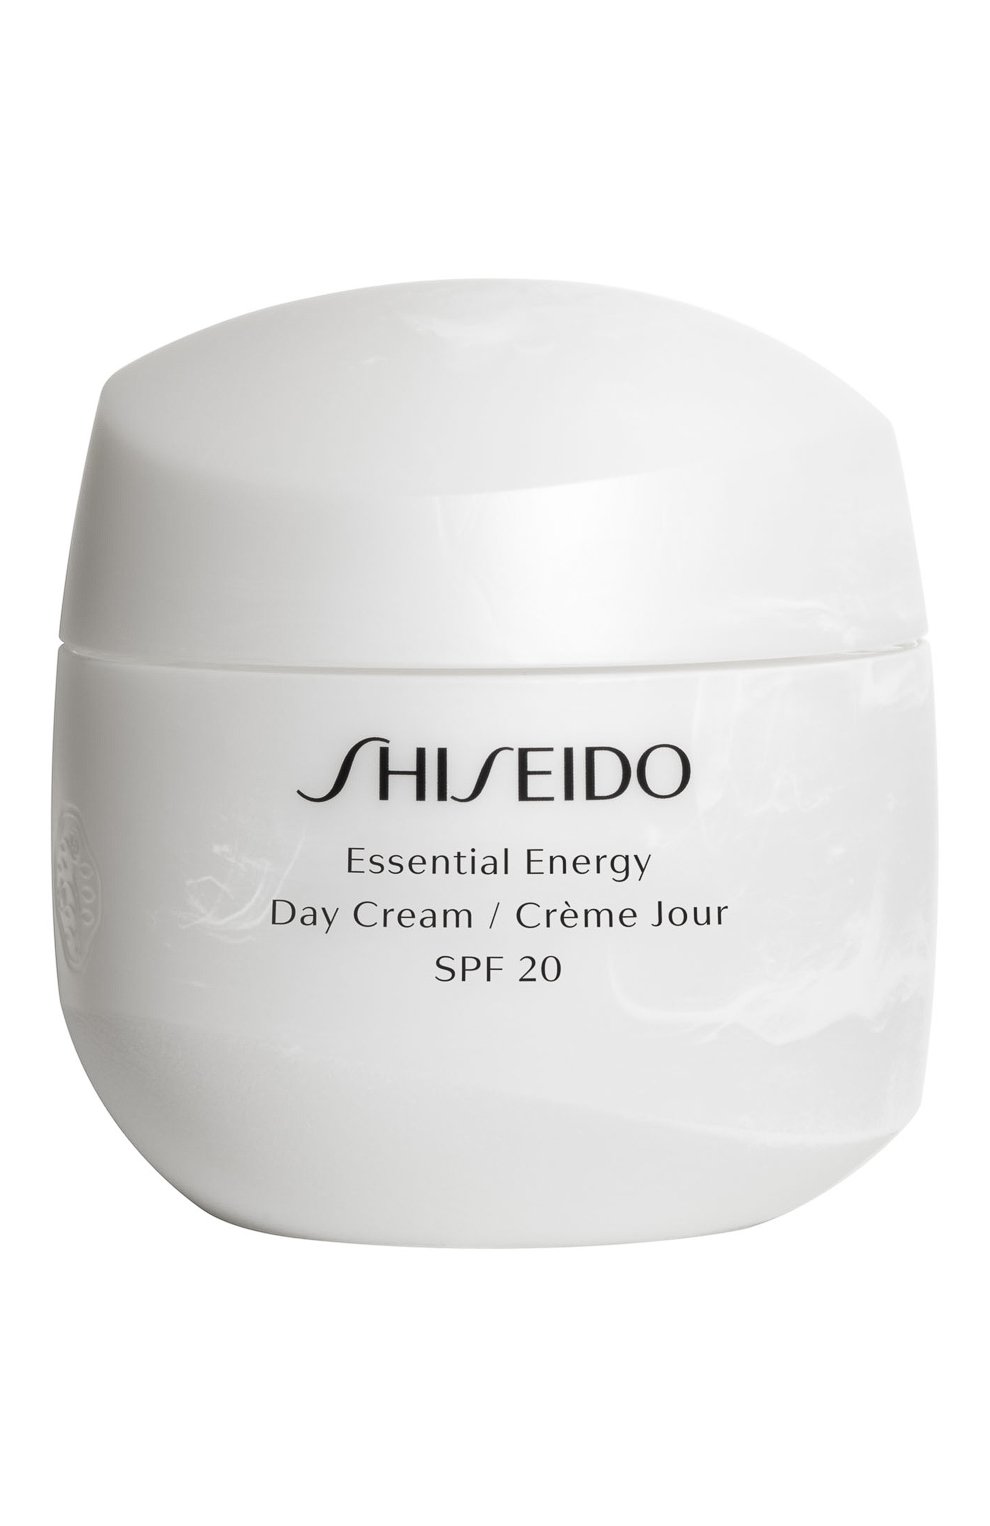 Shiseido essential